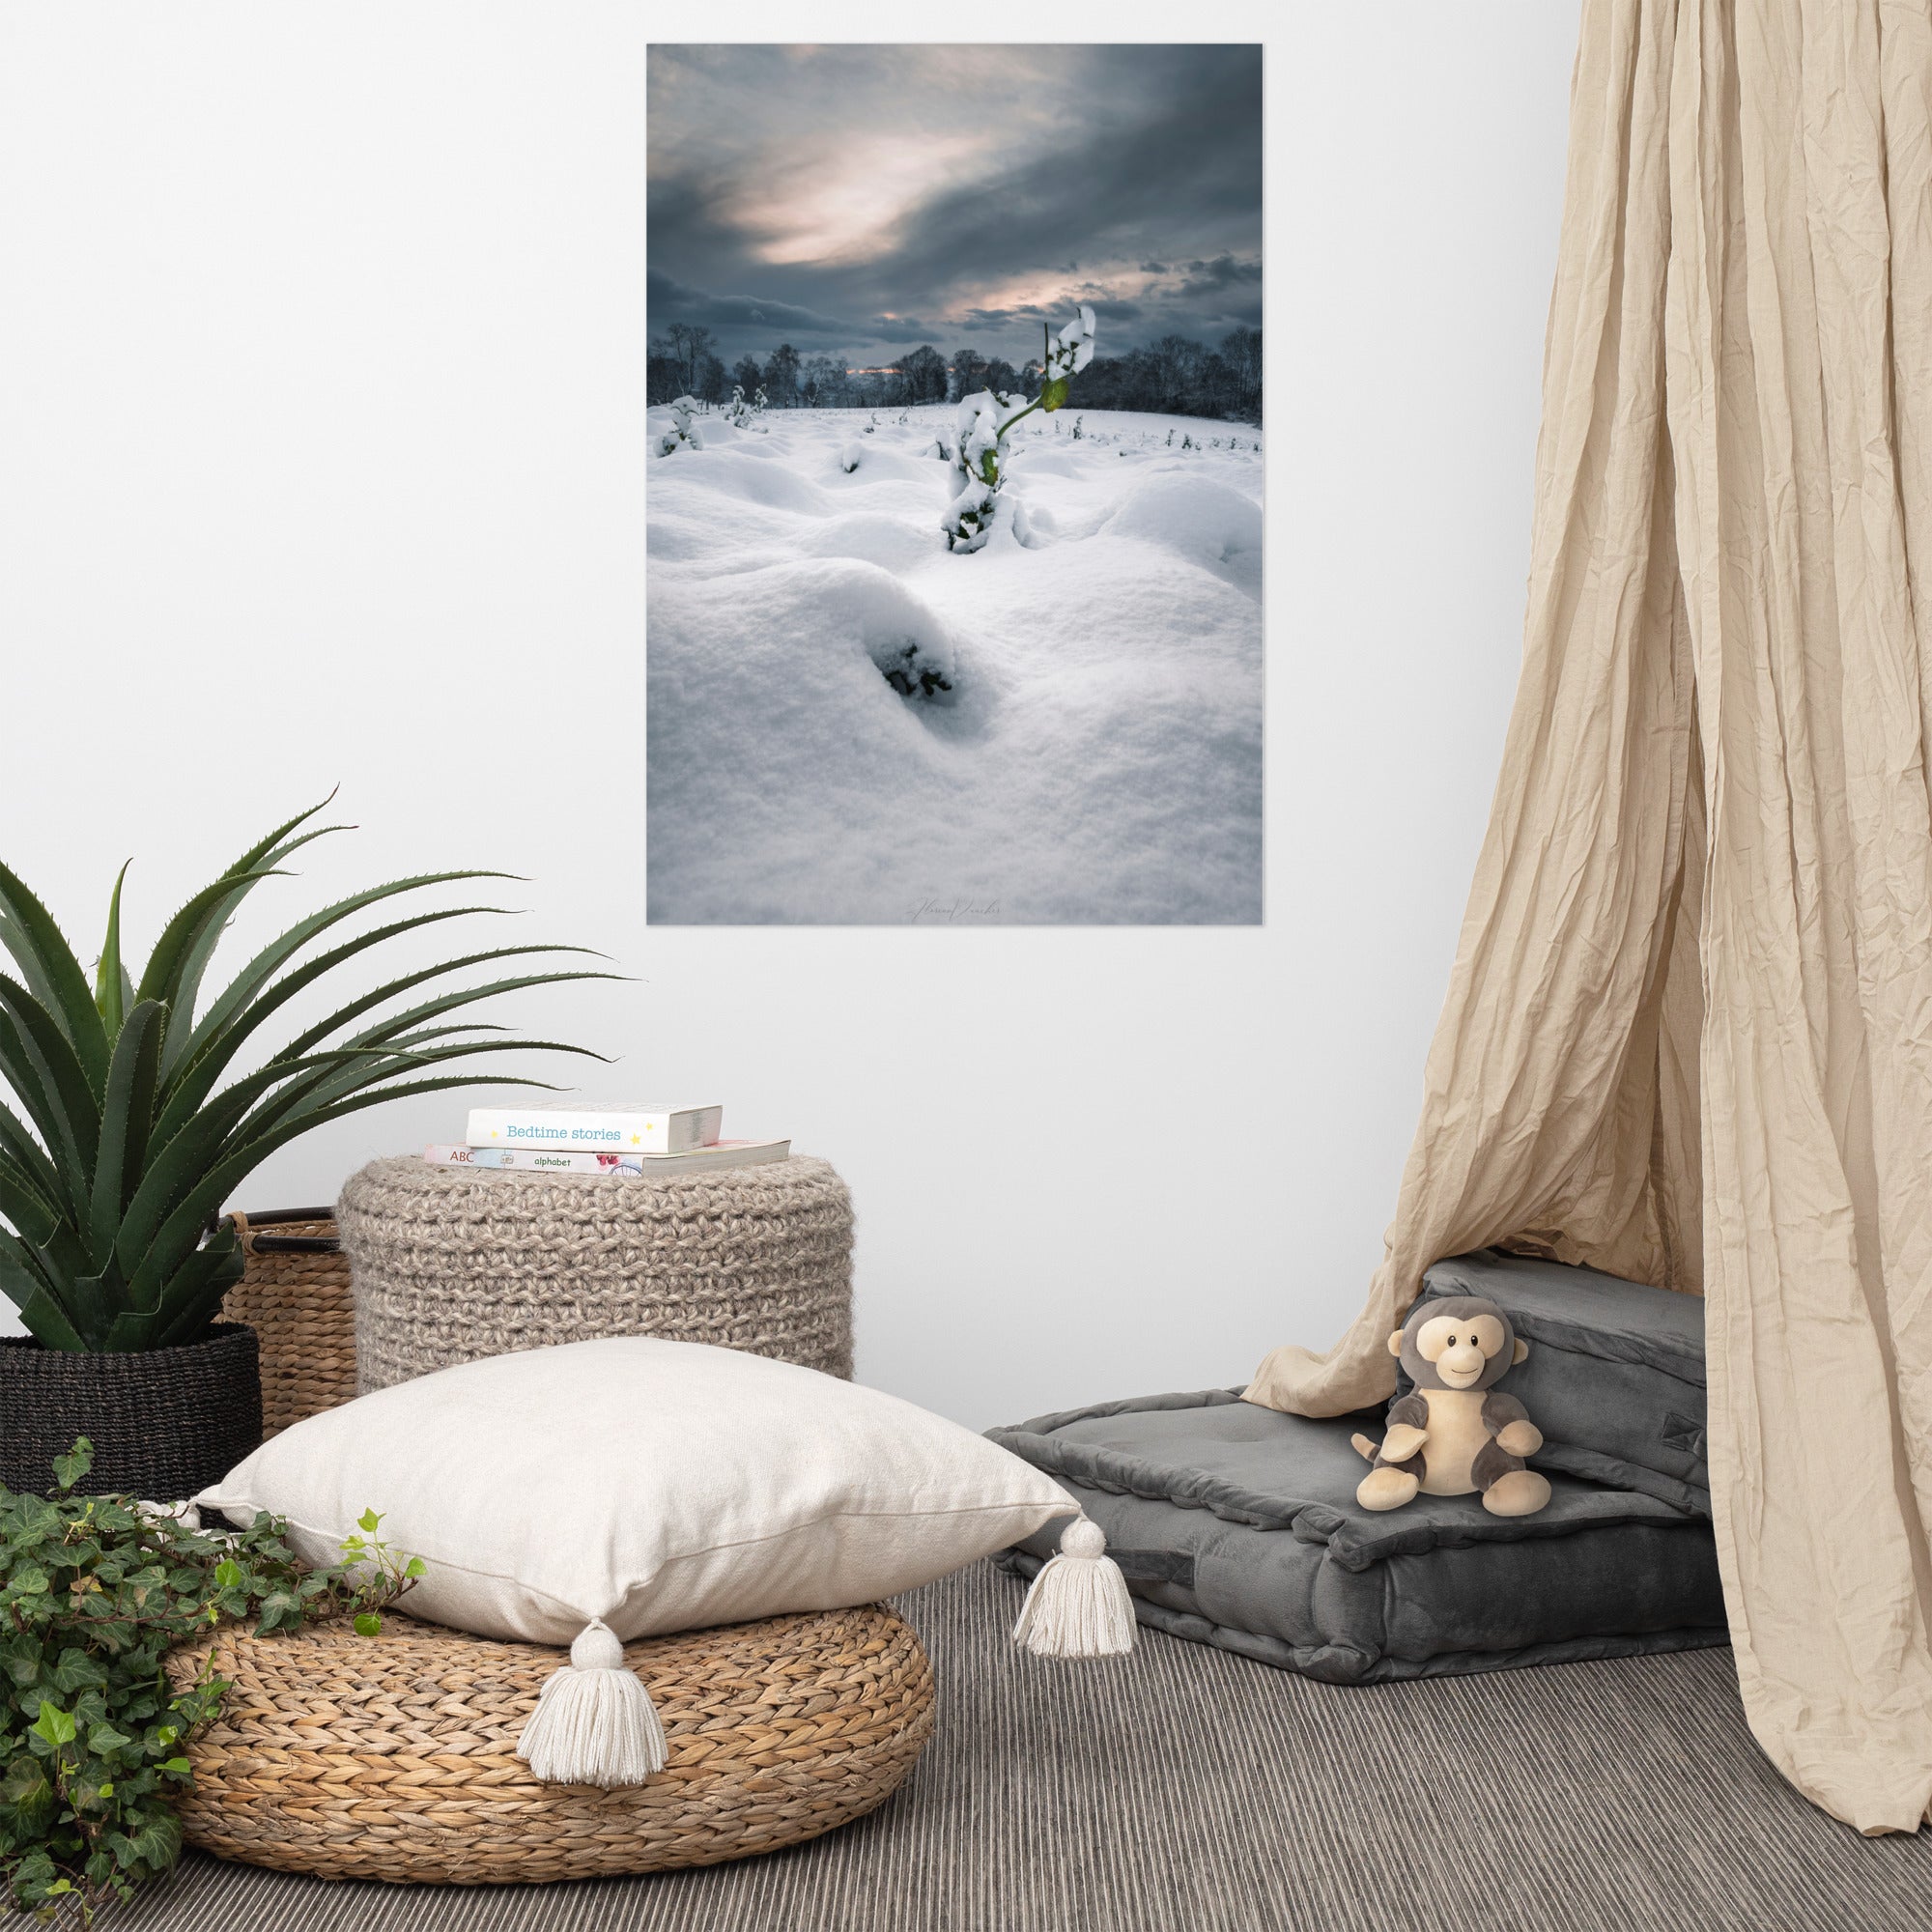 Photographie hivernale captivante montrant une plante verte solitaire au milieu d'un paysage enneigé, avec une forêt lointaine et un ciel nuageux en arrière-plan, œuvre de Florian Vaucher.